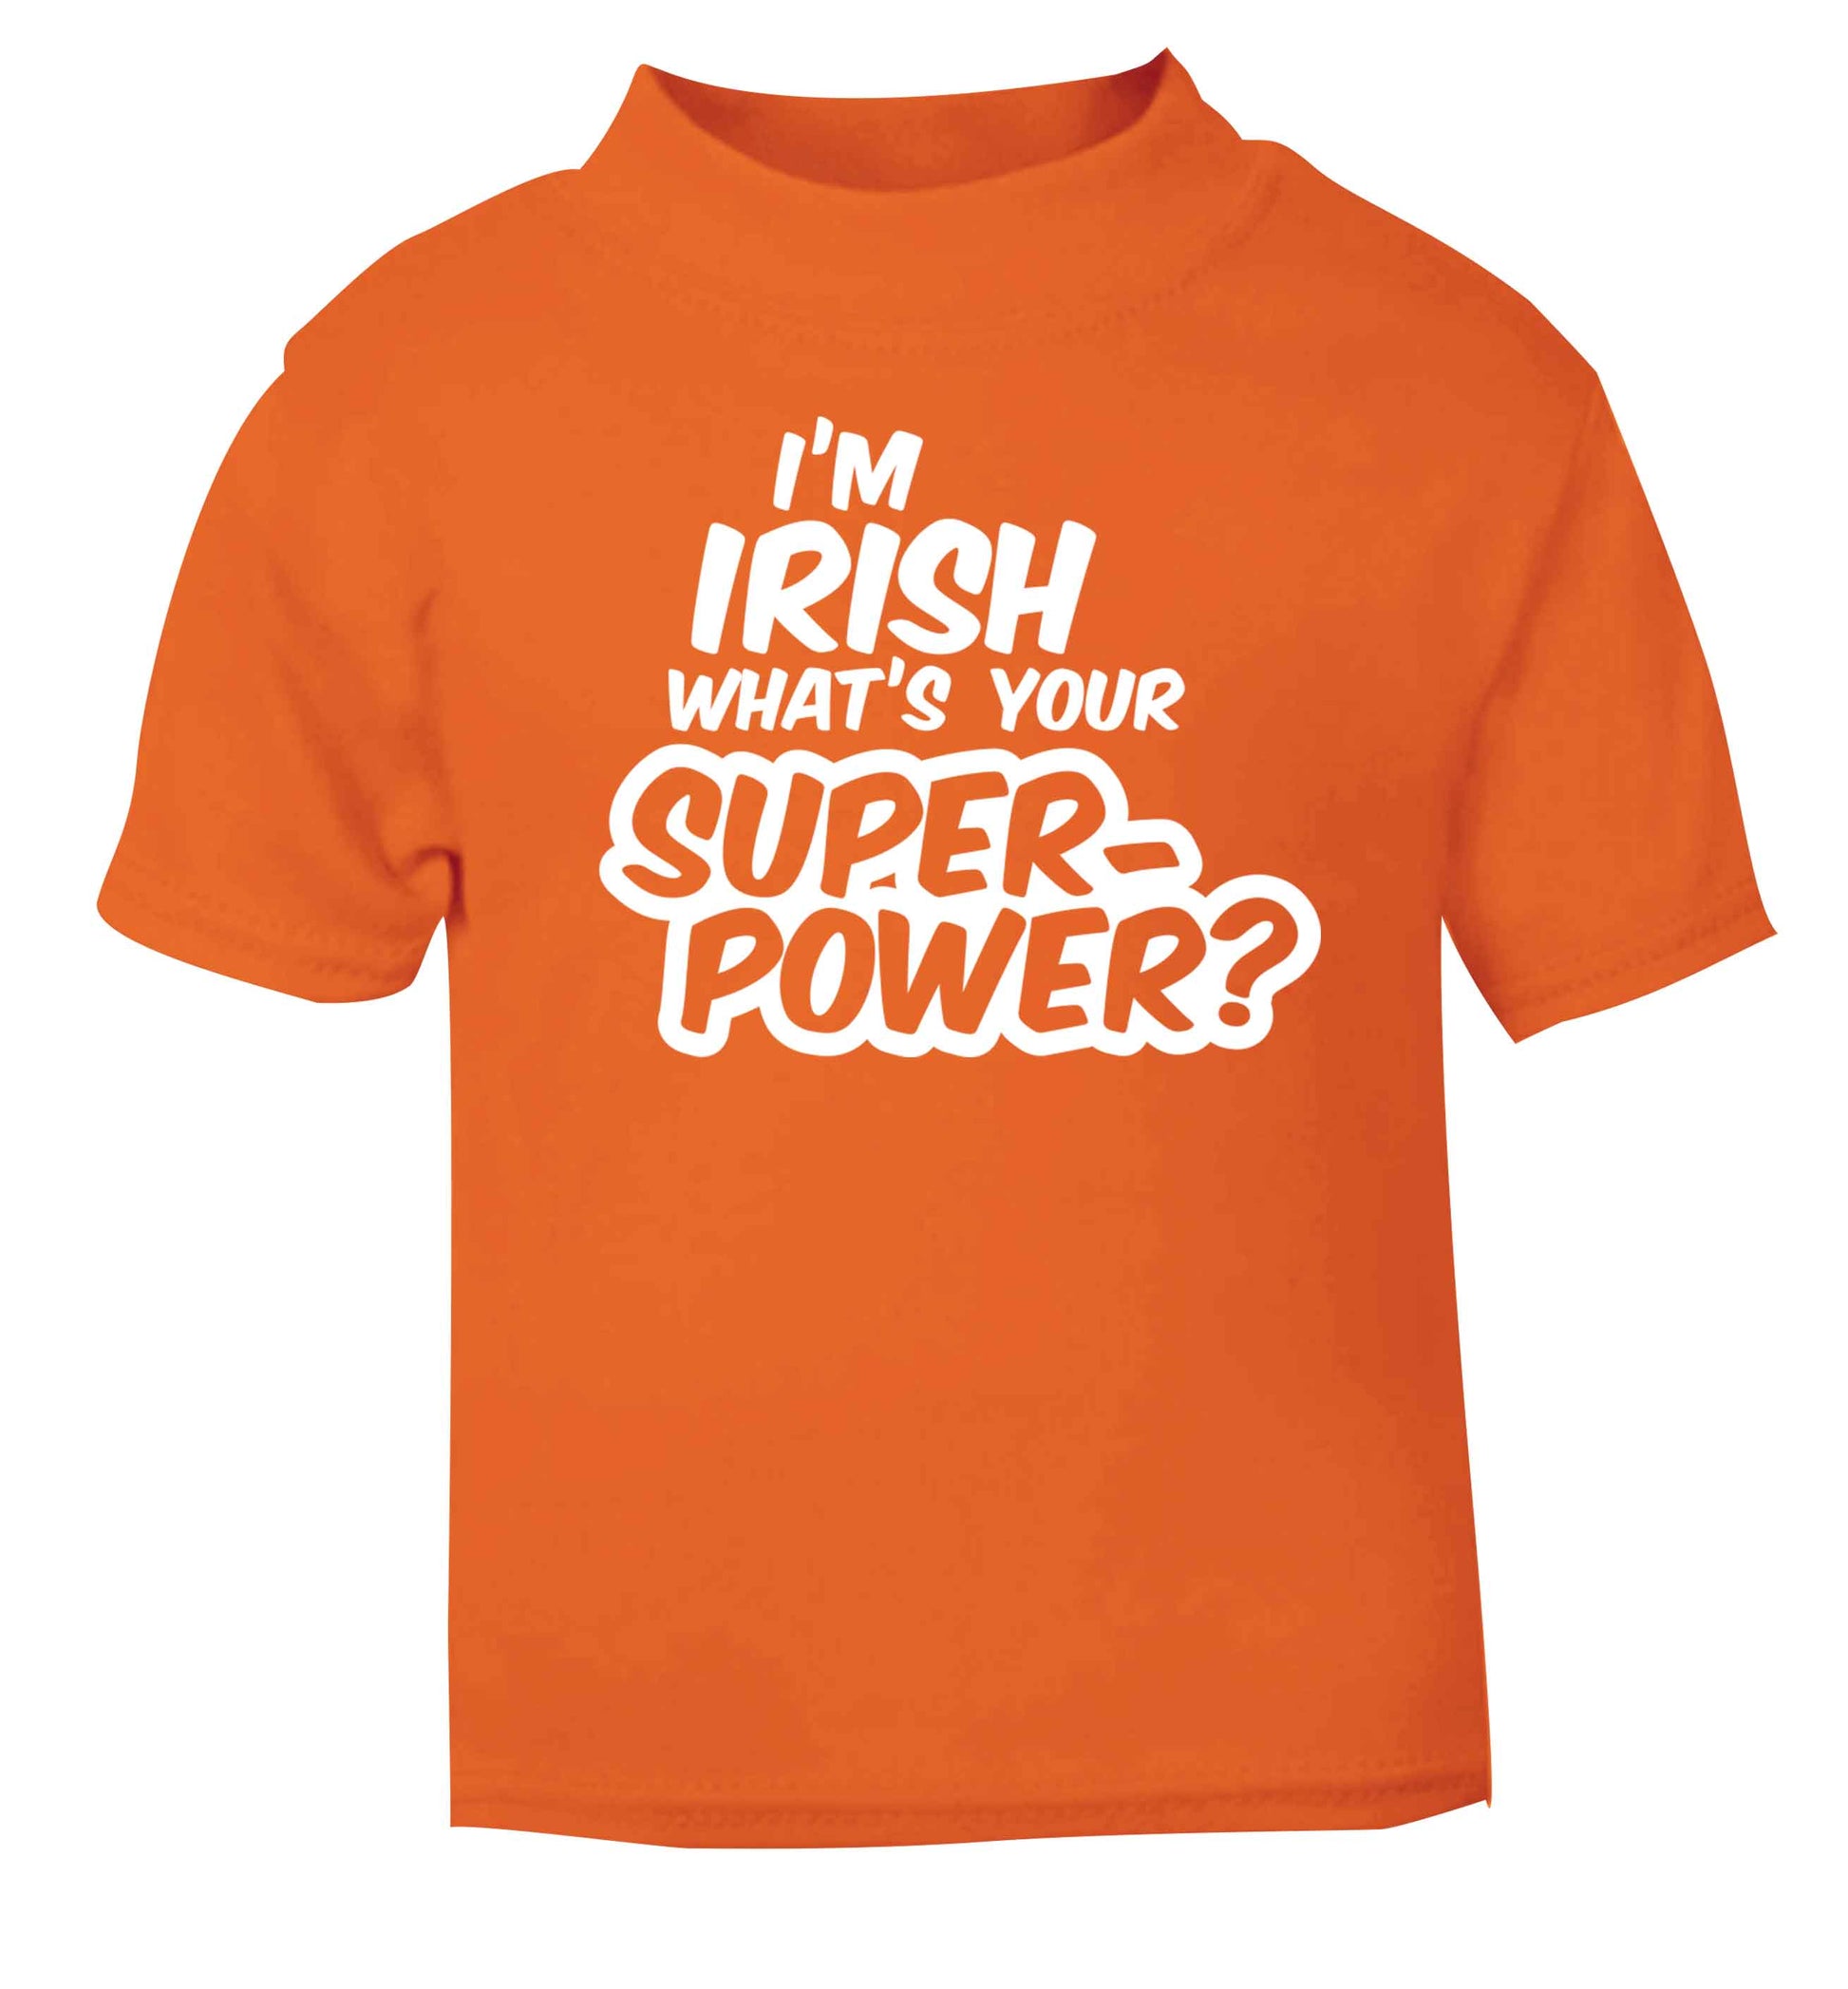 I'm Irish what's your superpower? orange baby toddler Tshirt 2 Years